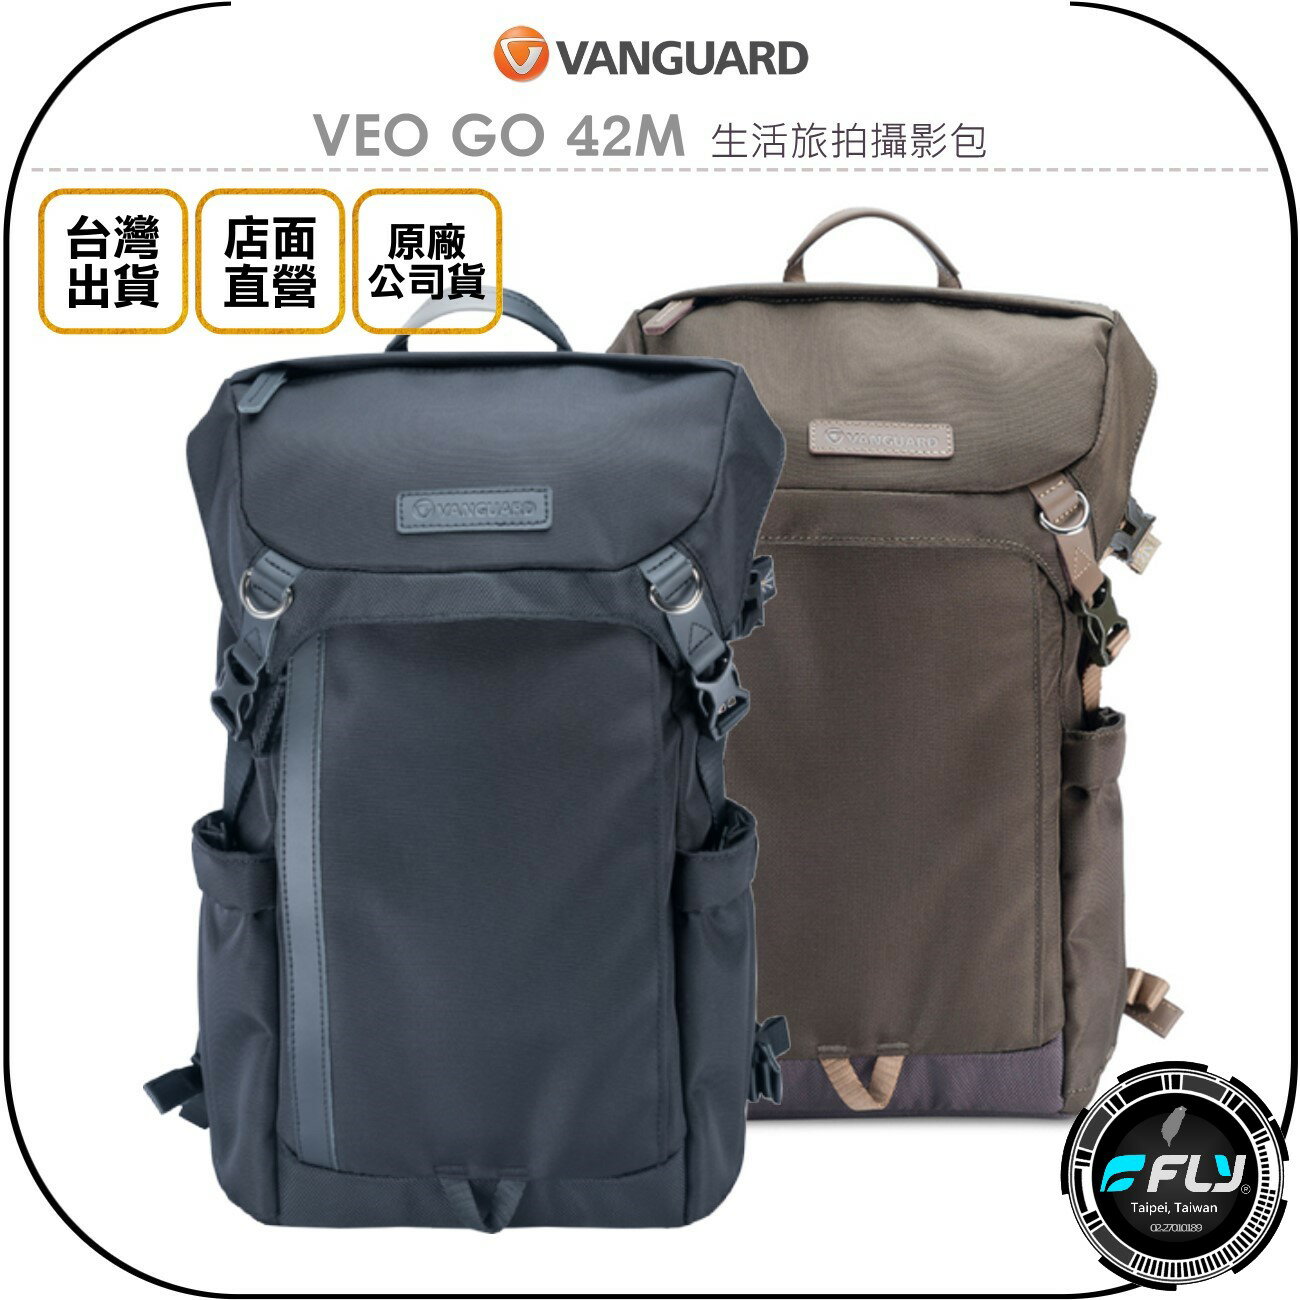 《飛翔無線3C》VANGUARD 精嘉 VEO GO 42M 生活旅拍攝影包◉公司貨◉雙肩後背包◉單眼相機包